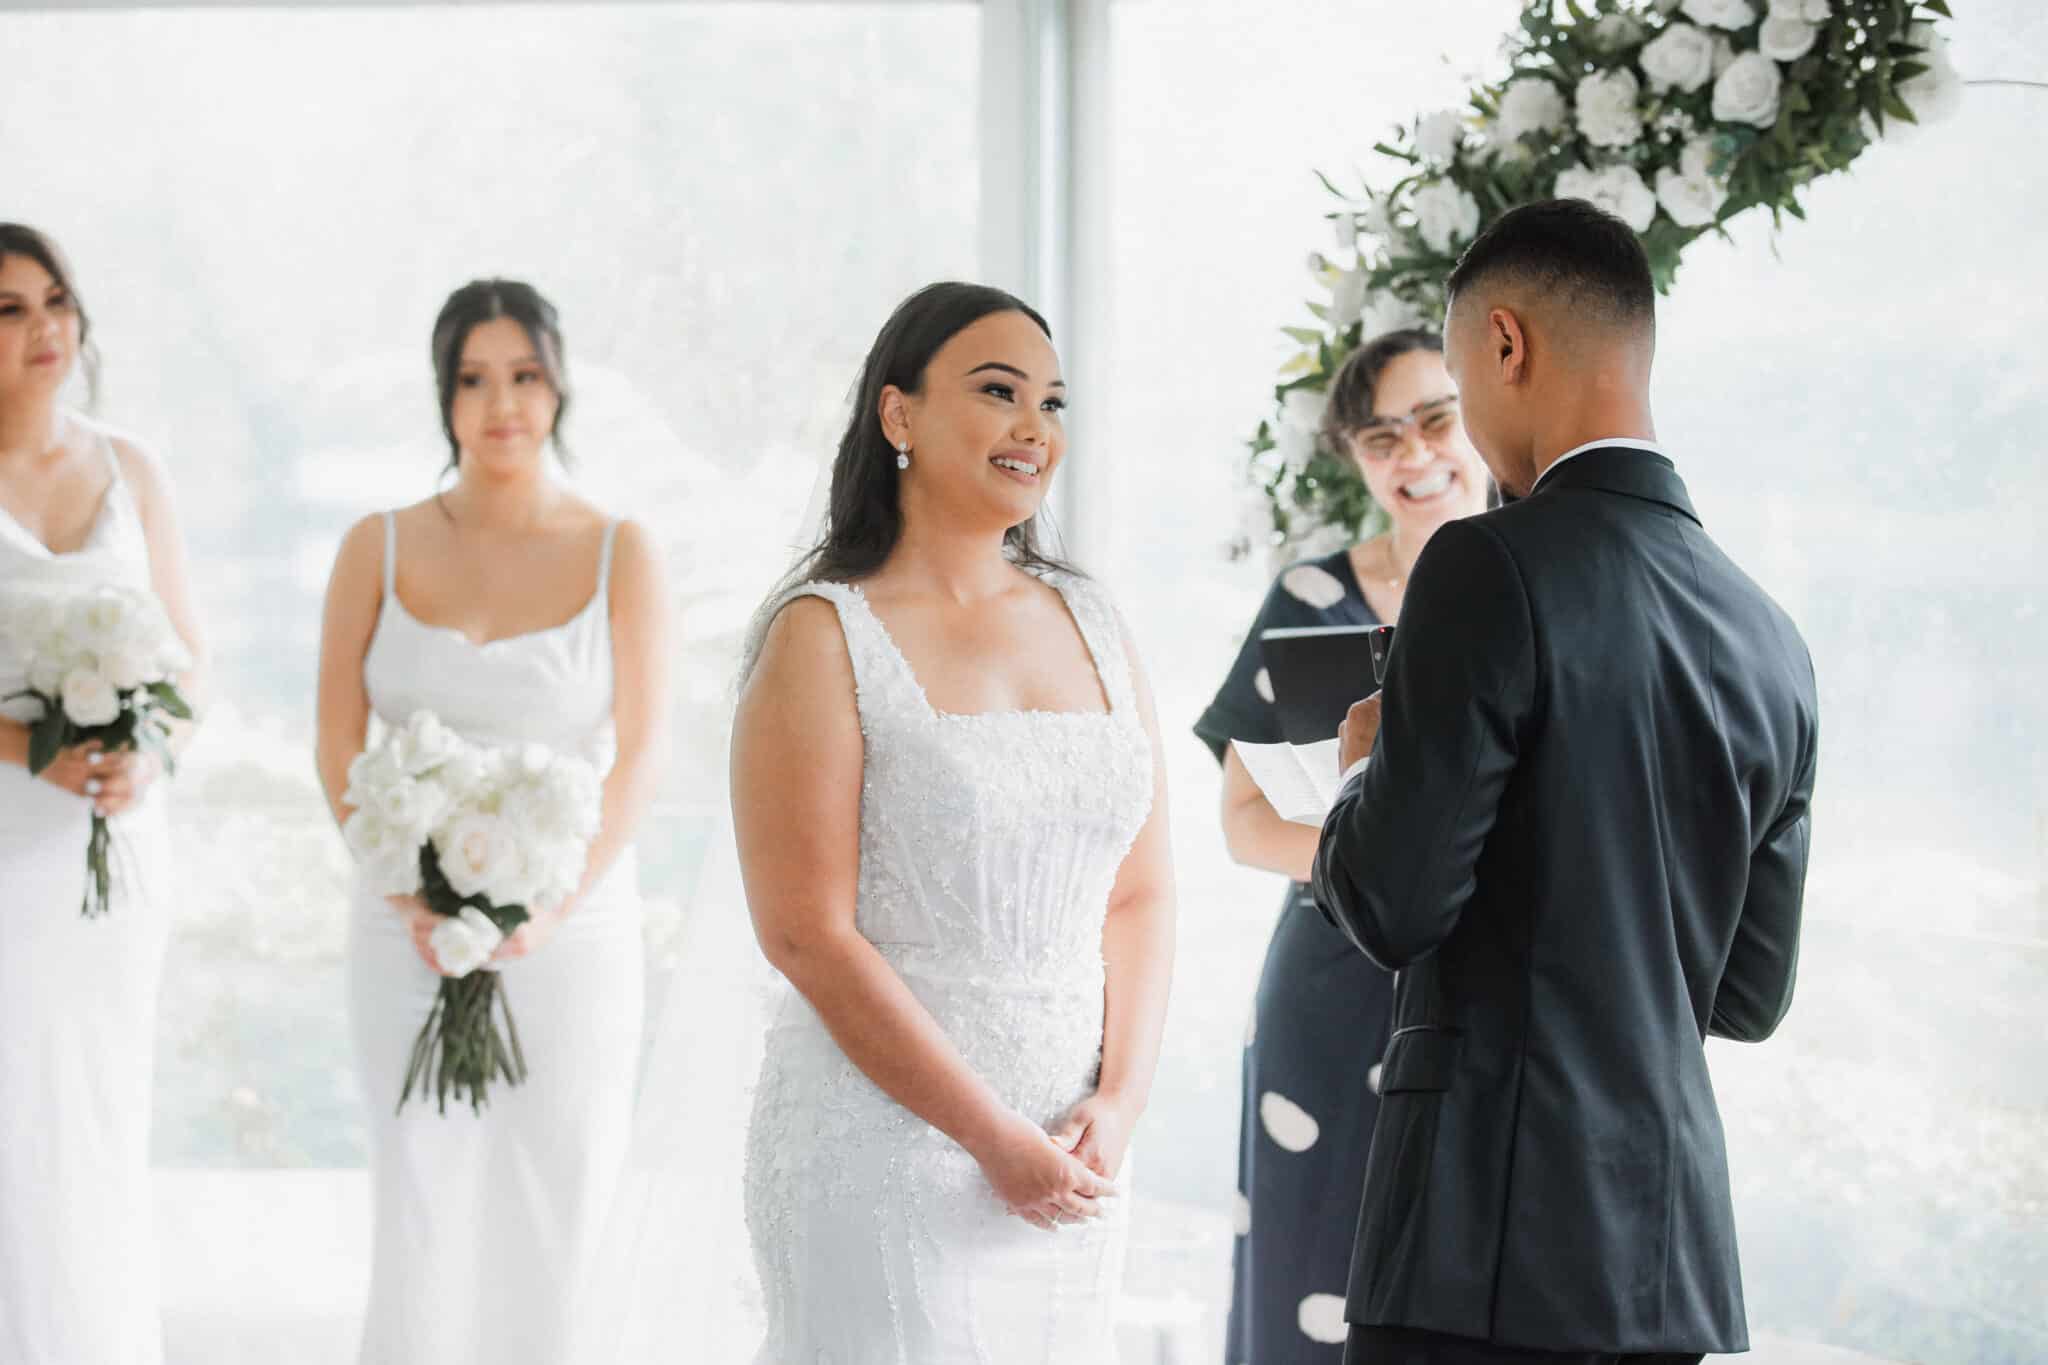 bride looking at the groom